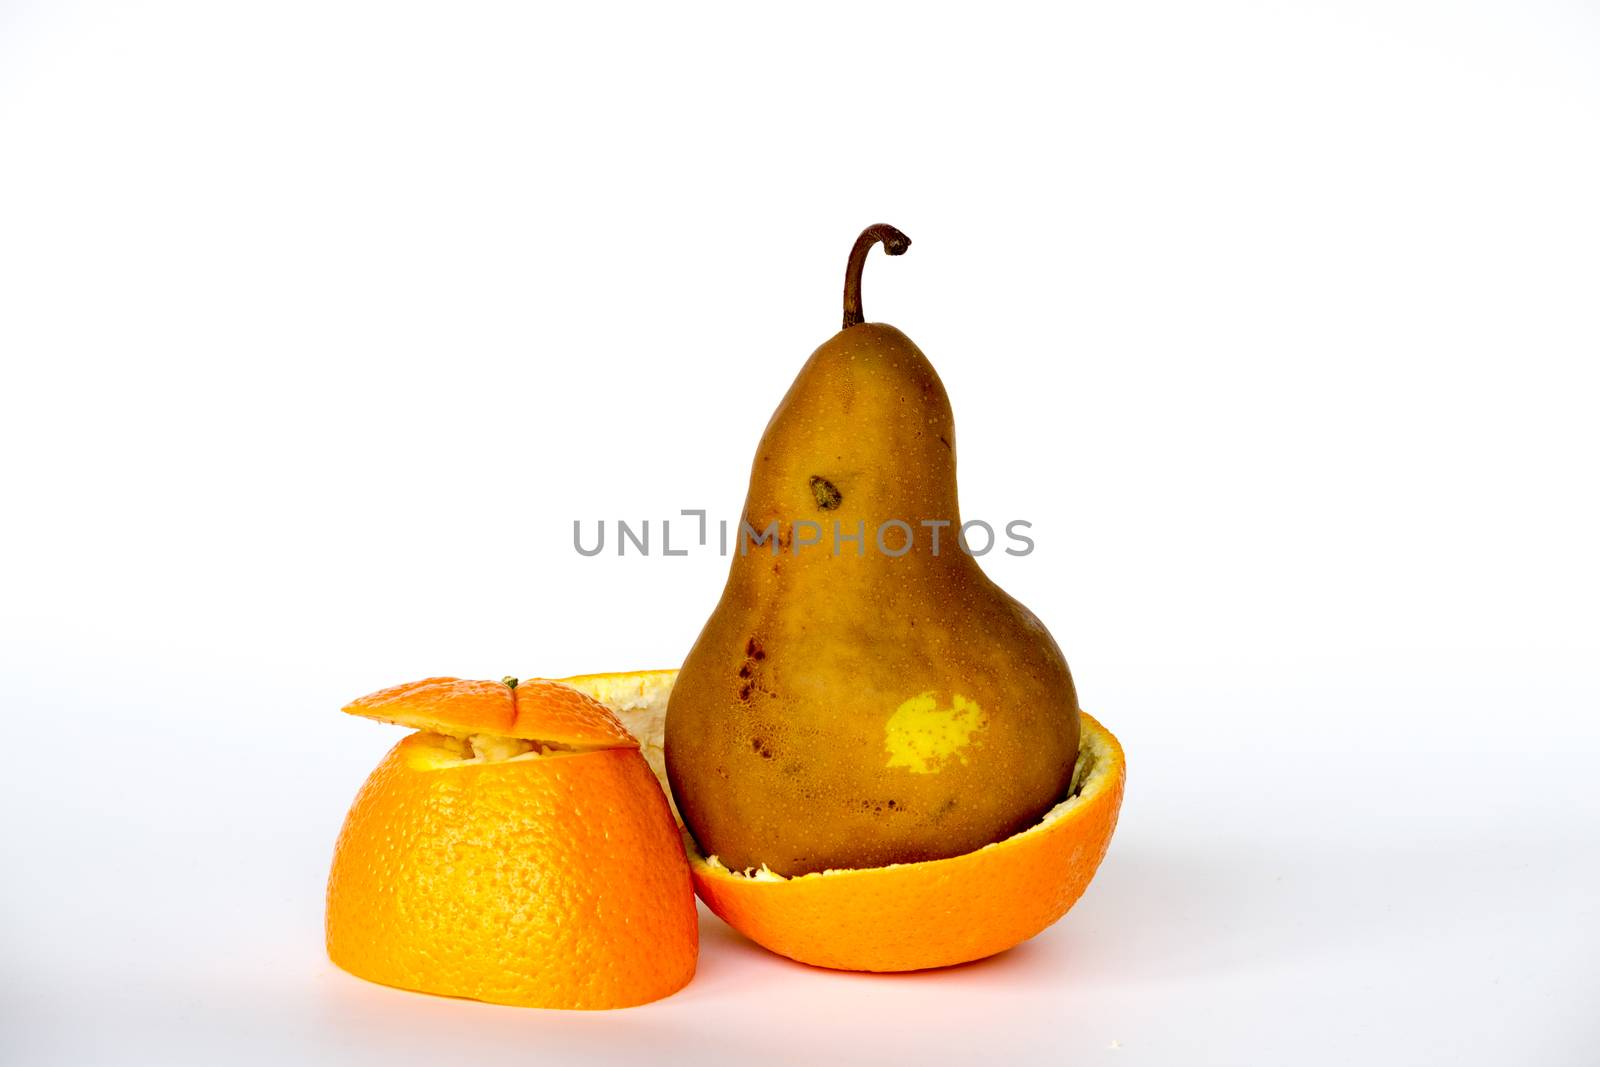 Pear inside an orange by rmbarricarte